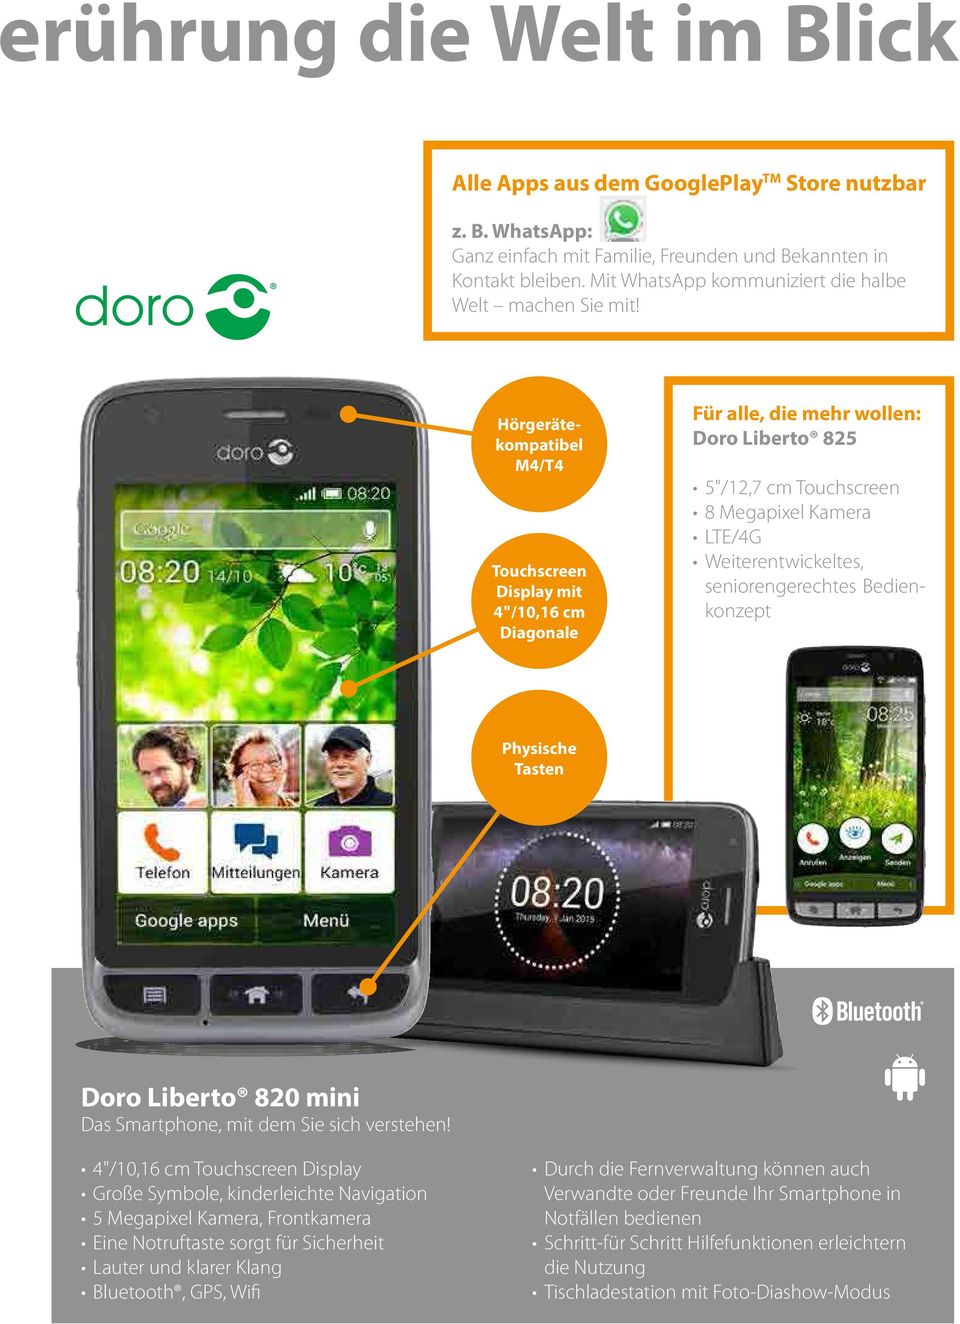 Hörgerätekompatibel M4/T4 Touchscreen Display mit 4"/10,16 cm Diagonale Für alle, die mehr wollen: Doro Liberto 825 5"/12,7 cm Touchscreen 8 Megapixel Kamera LTE/4G Weiterentwickeltes,